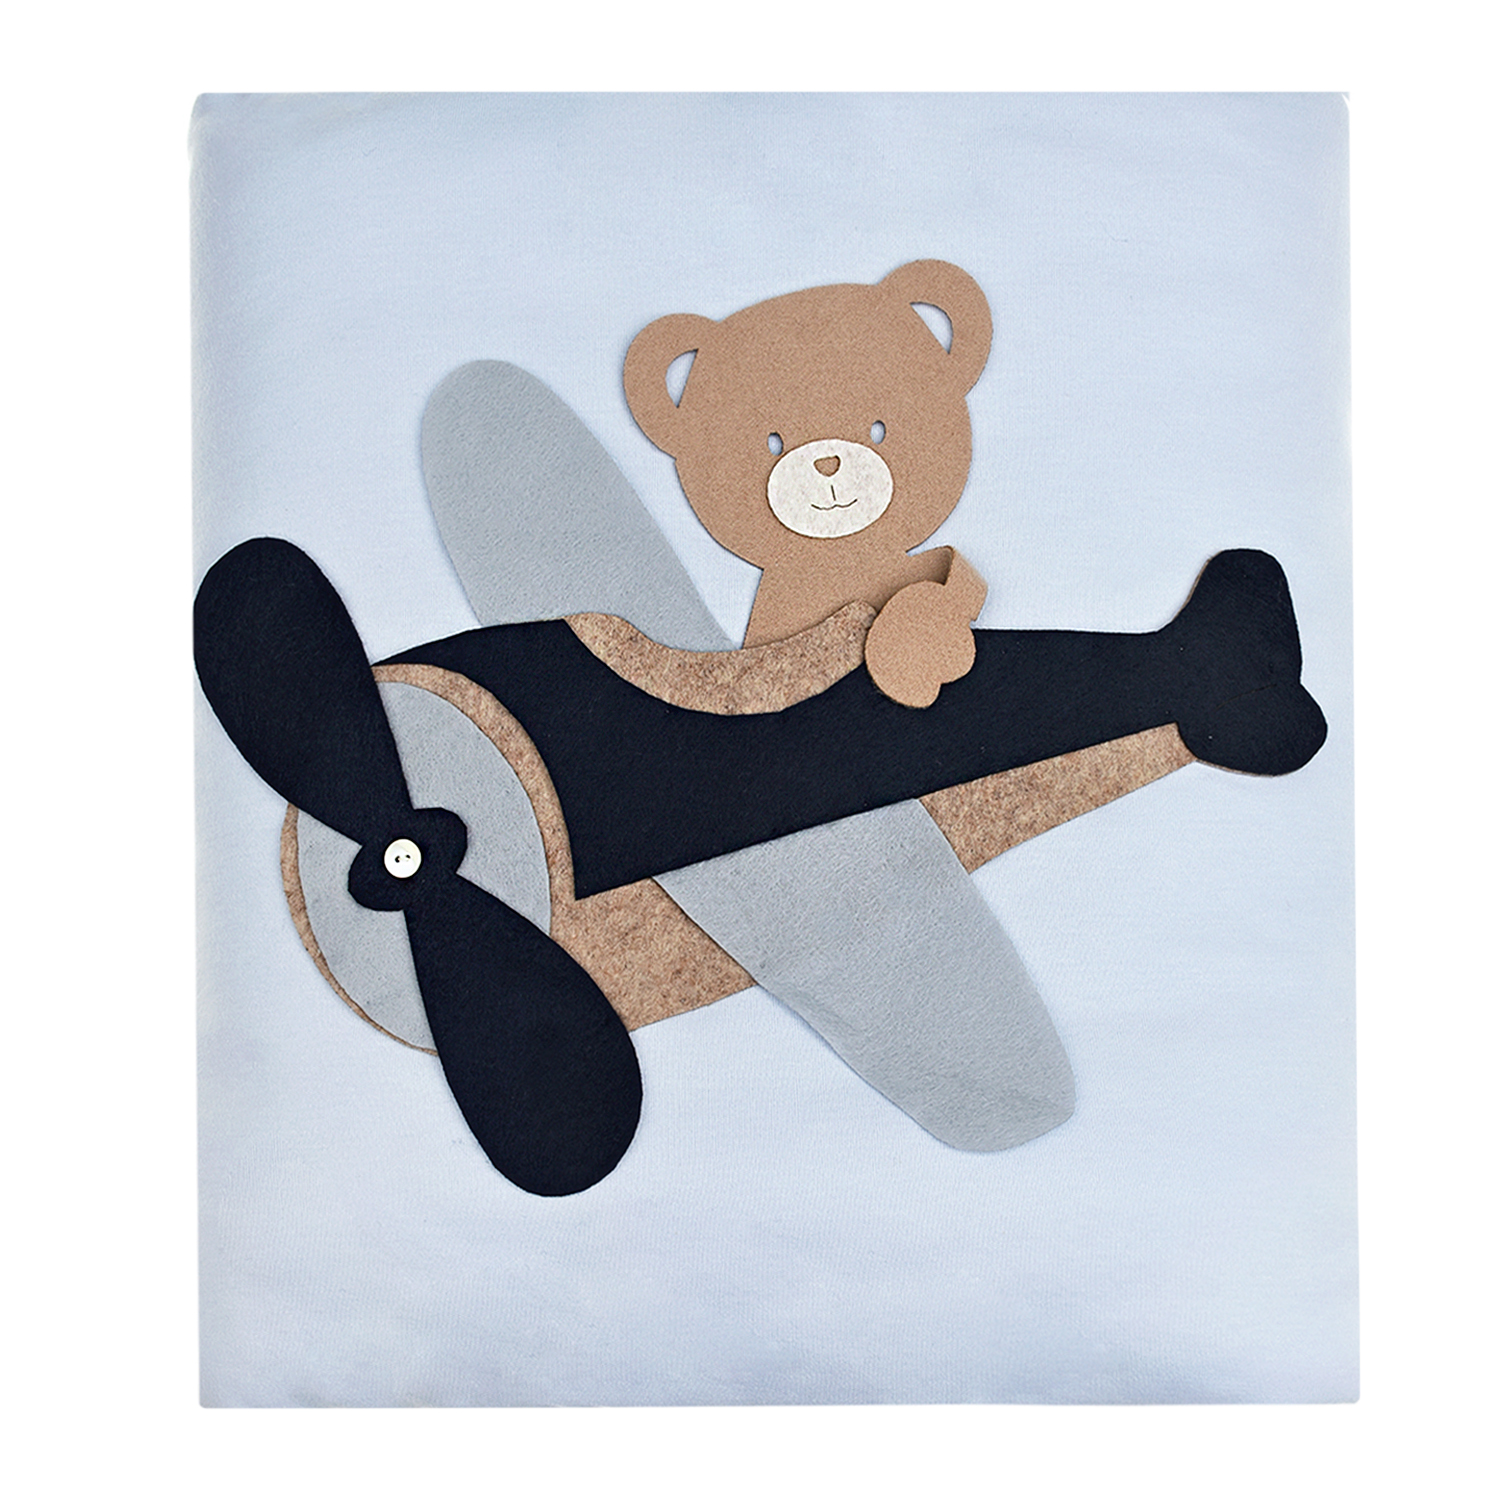 Одеяло с аппликацией "медвежонок" Story Loris детское, размер unica, цвет голубой - фото 2